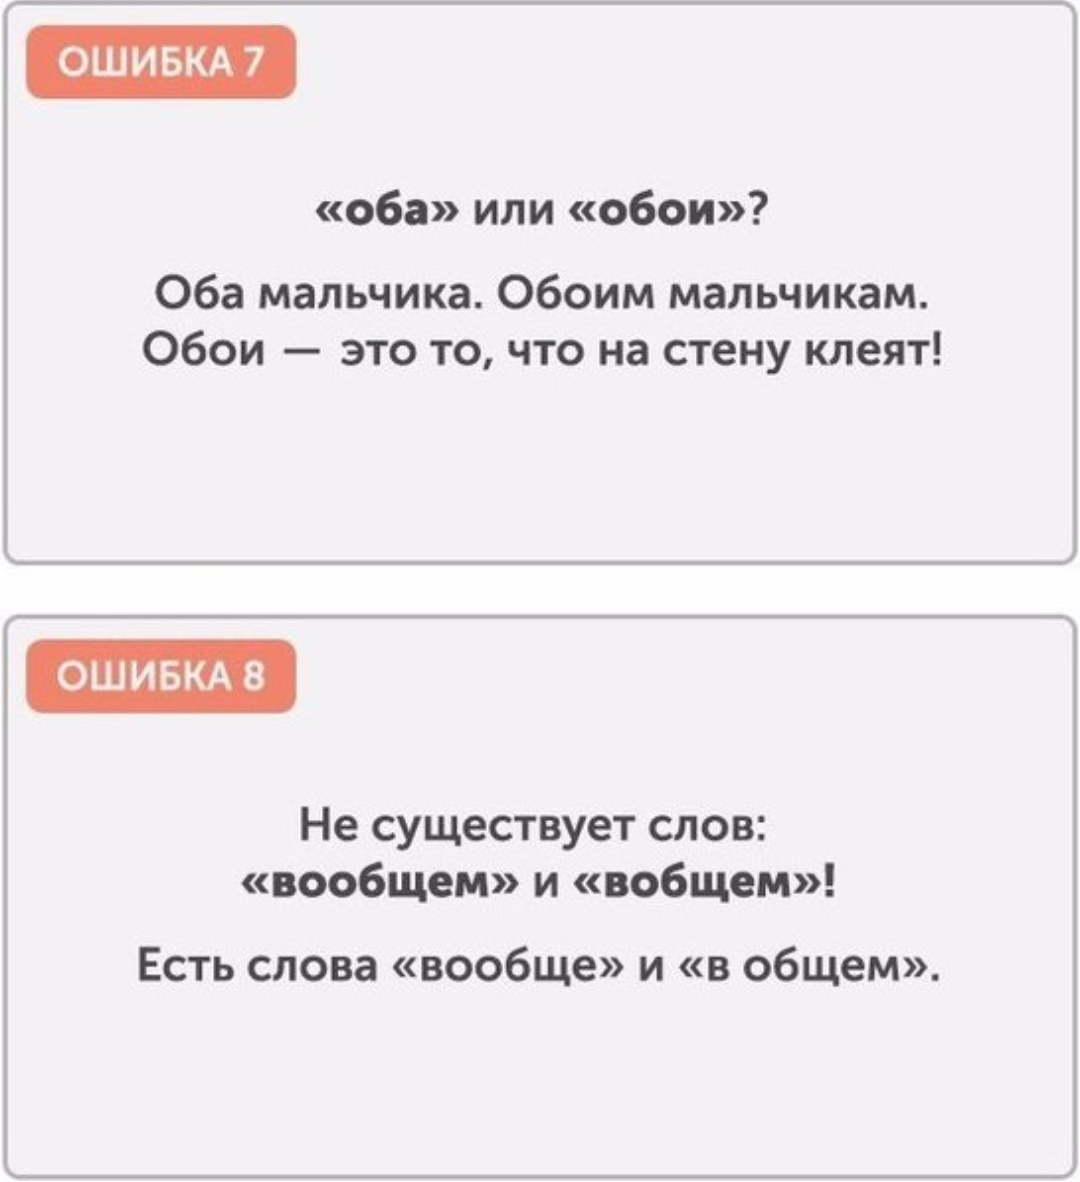 Популярные ошибки в русском языке